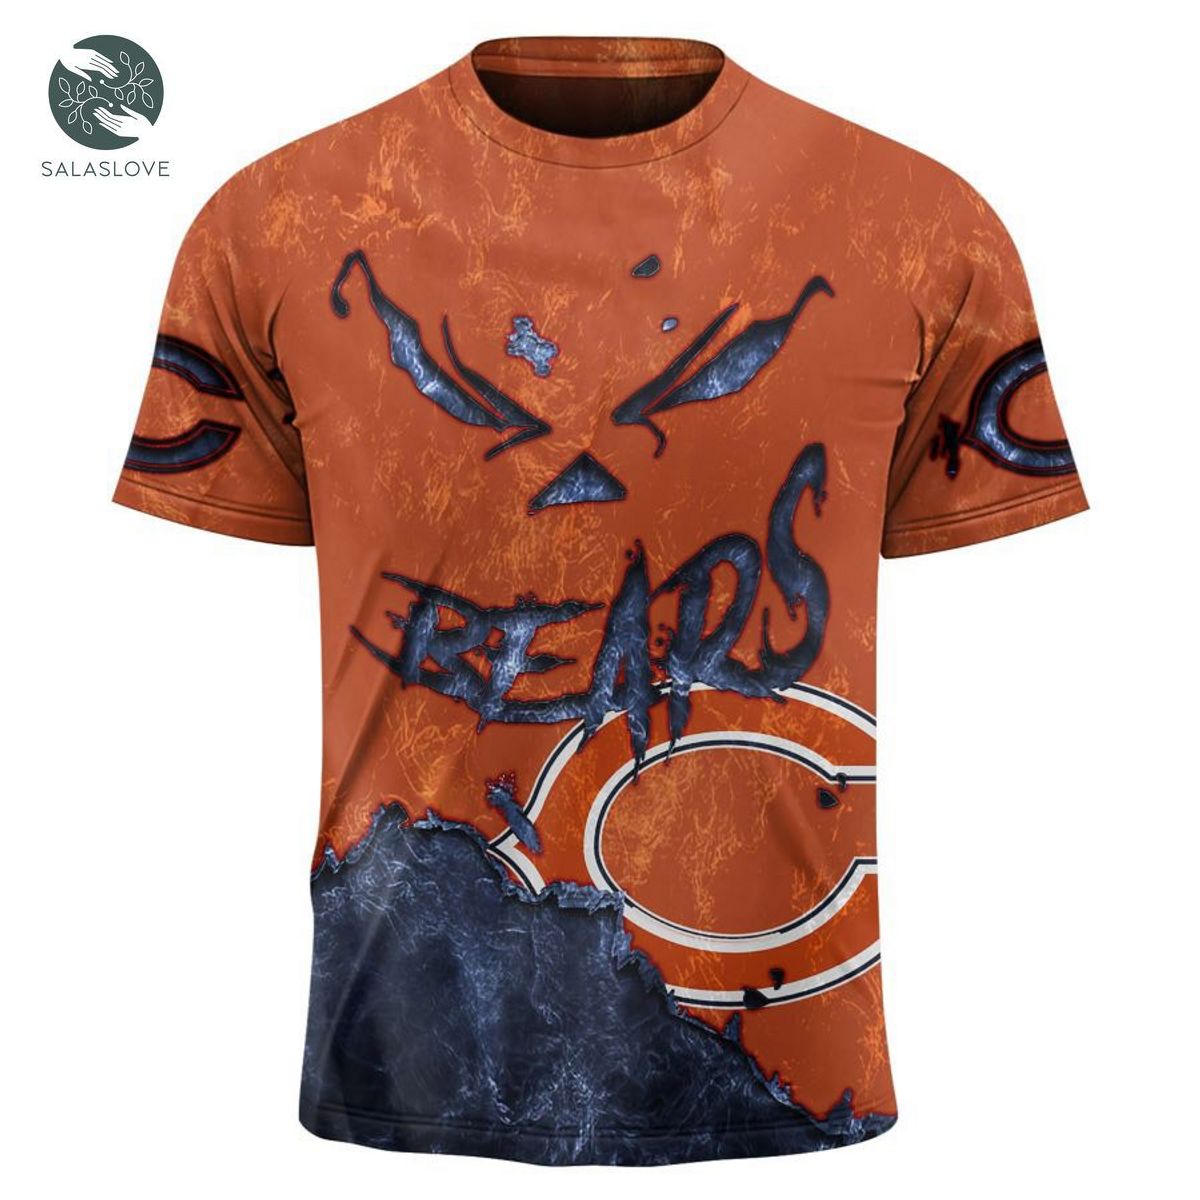 Chicago Bears T-shirt 3D devil eyes gift for fans